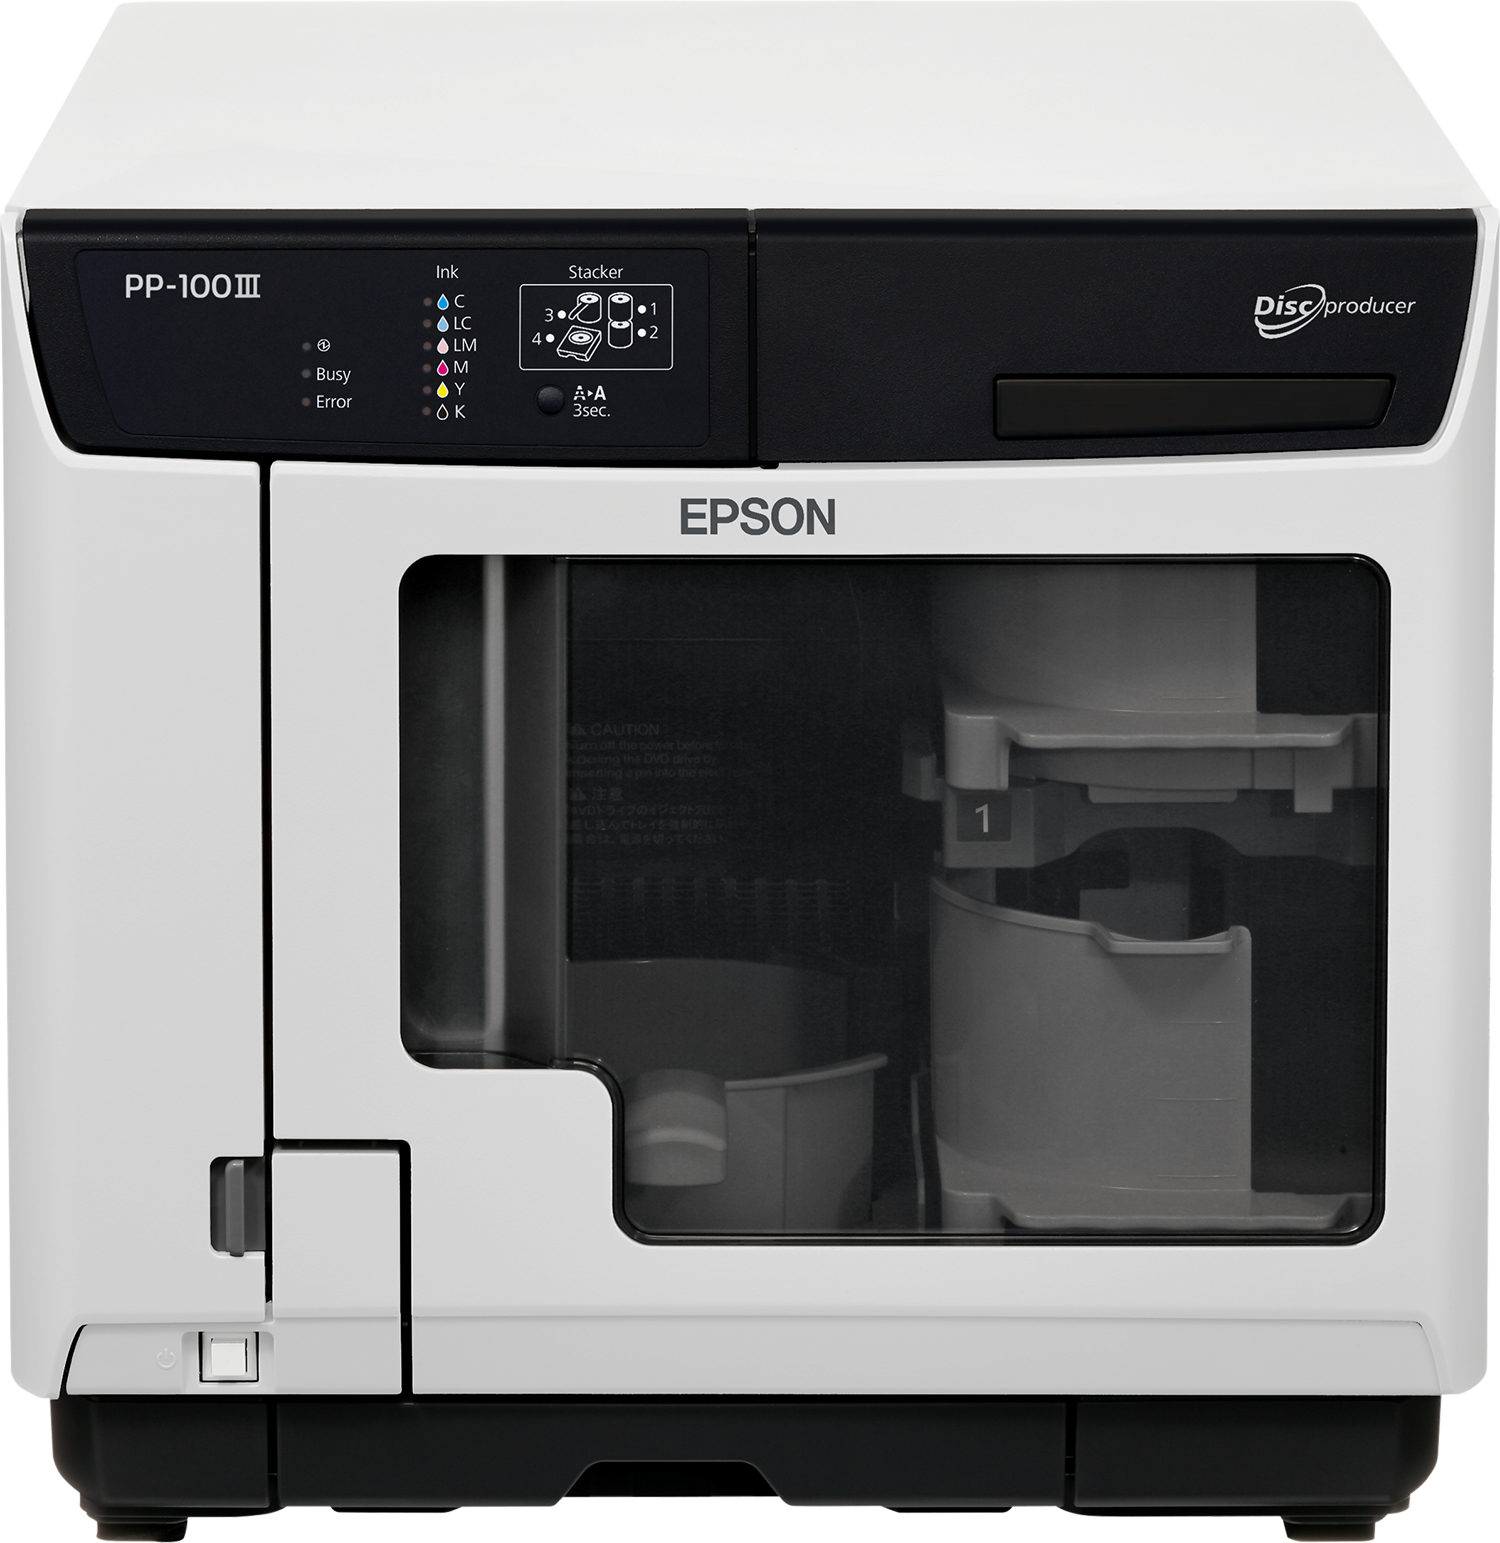 Náplně do tiskárny Epson Discproducer PP-100